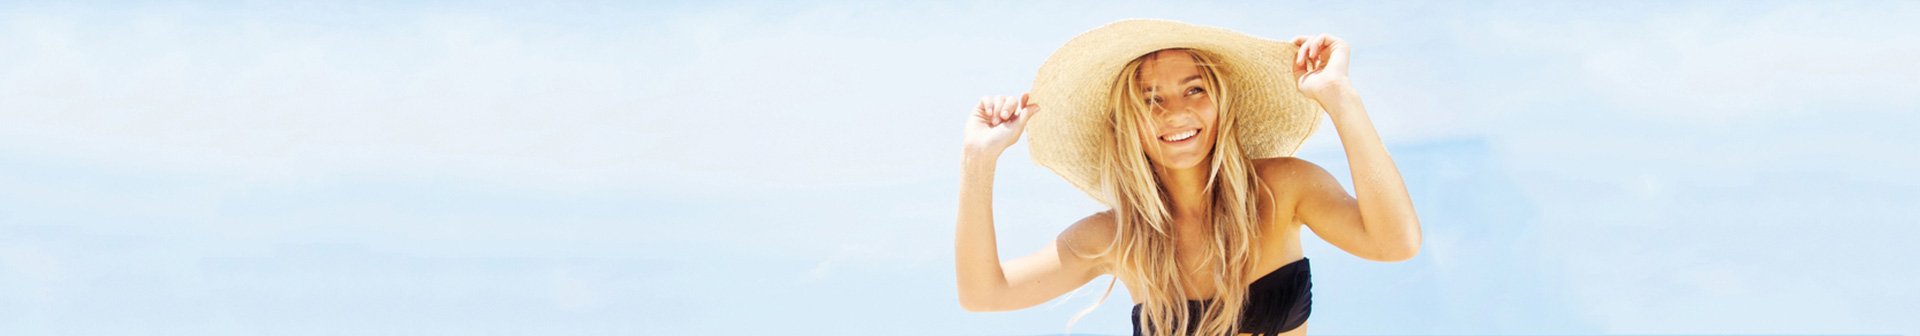 Frau im Bikini und Sonnenhut feiert am Strand